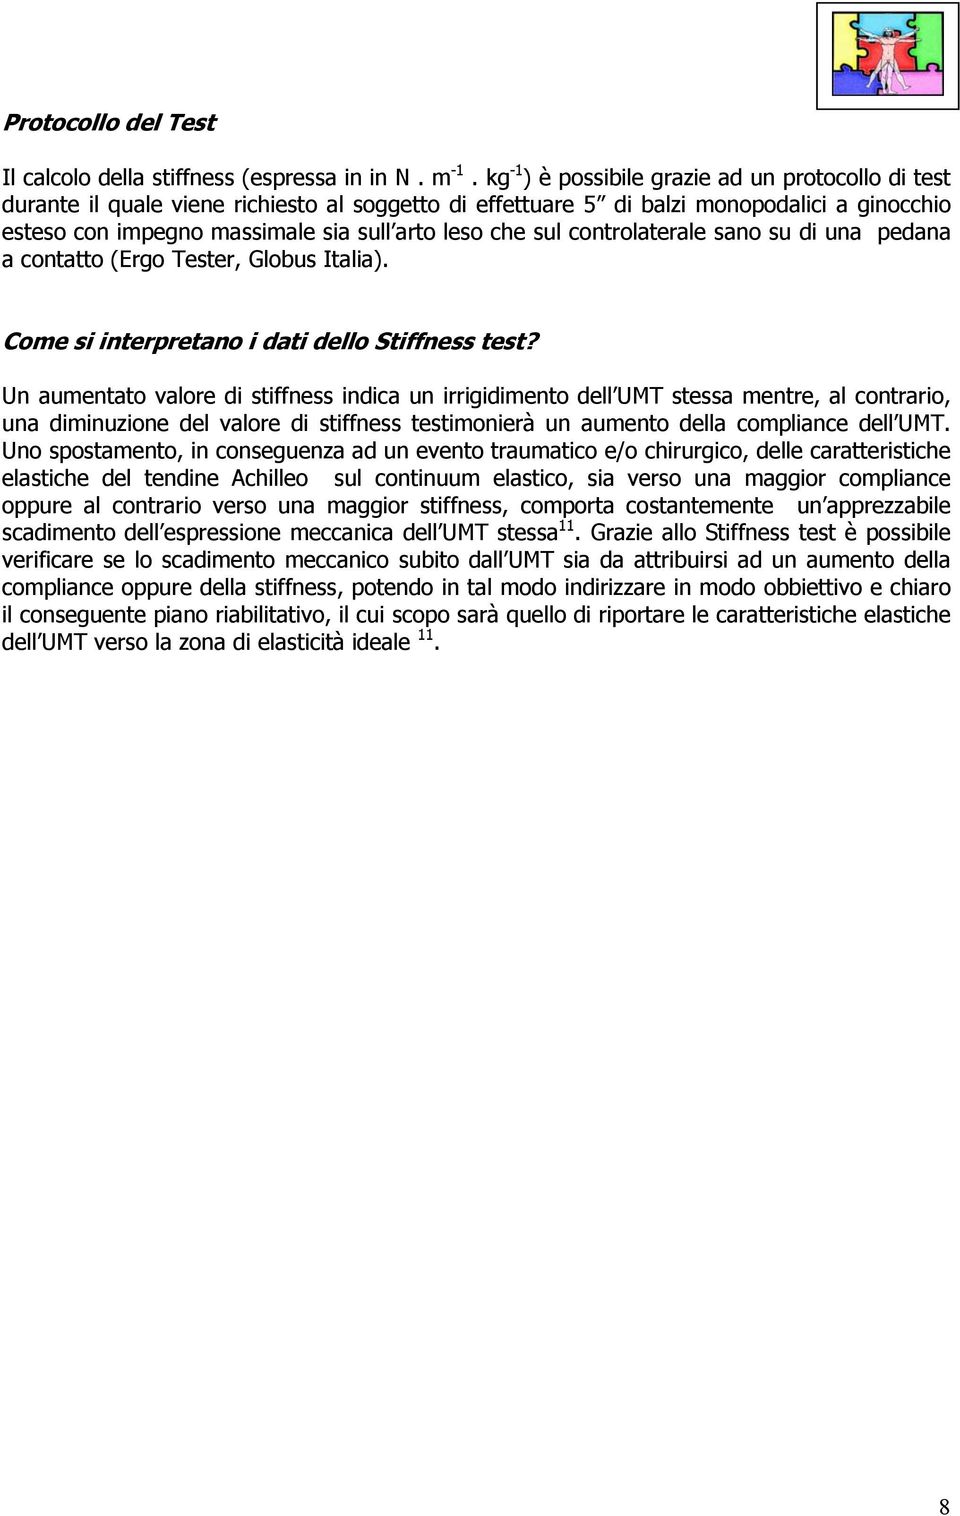 sul controlaterale sano su di una pedana a contatto (Ergo Tester, Globus Italia). Come si interpretano i dati dello Stiffness test?